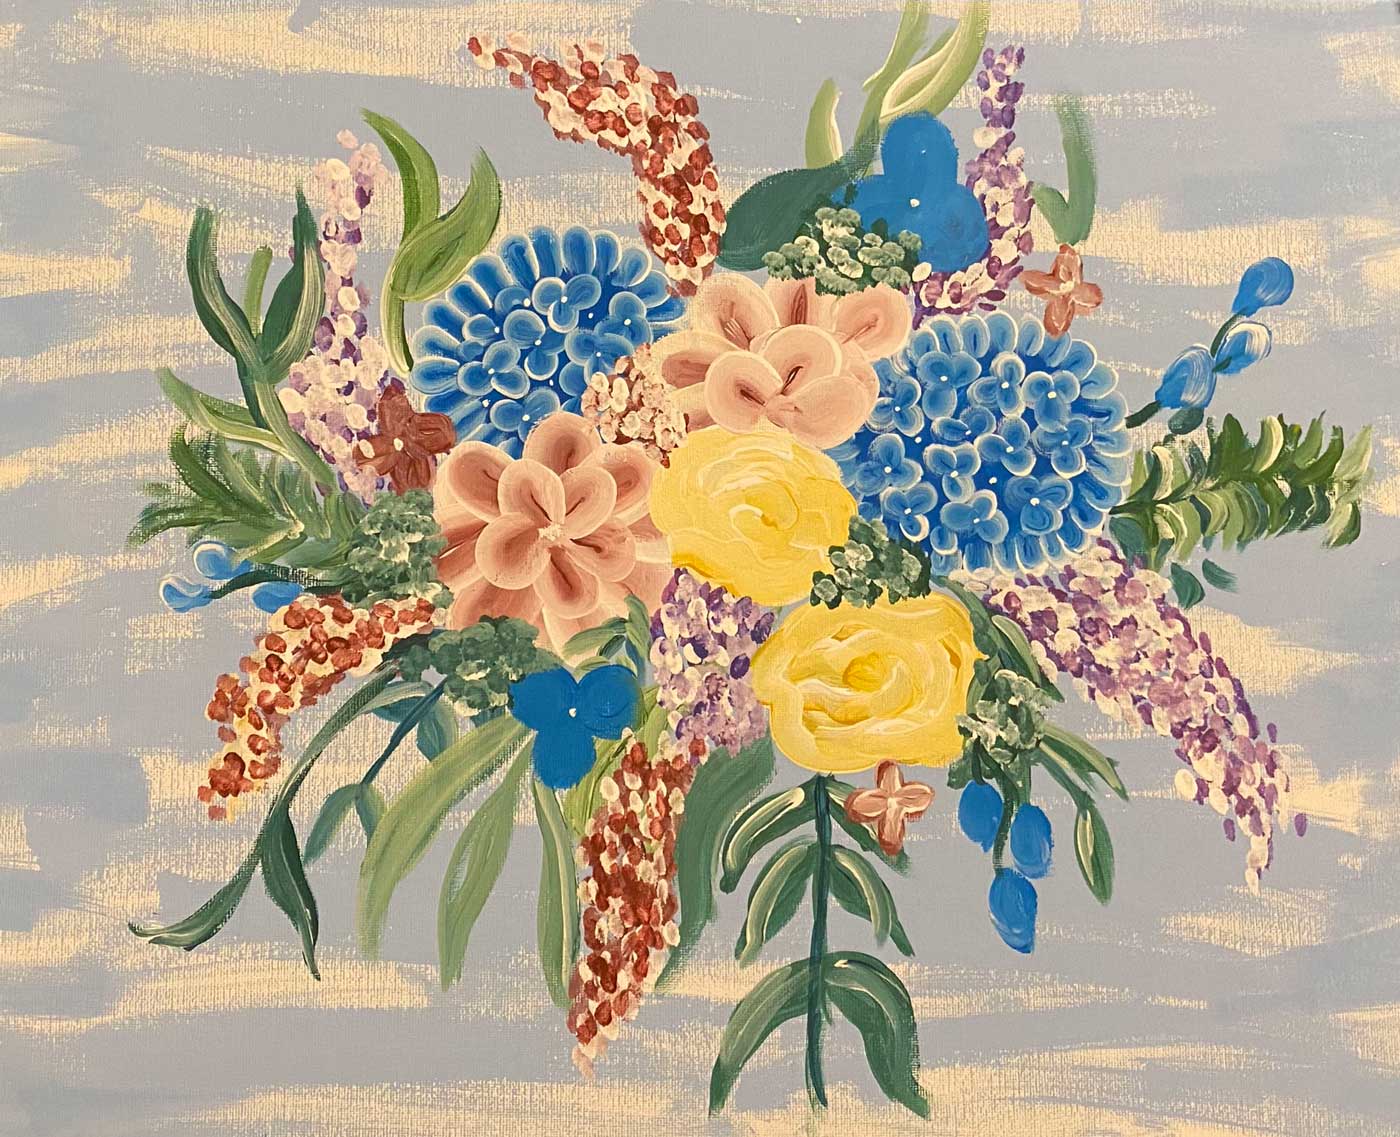 Wild Flower Arrangement 36”W x 24”H Acrylic